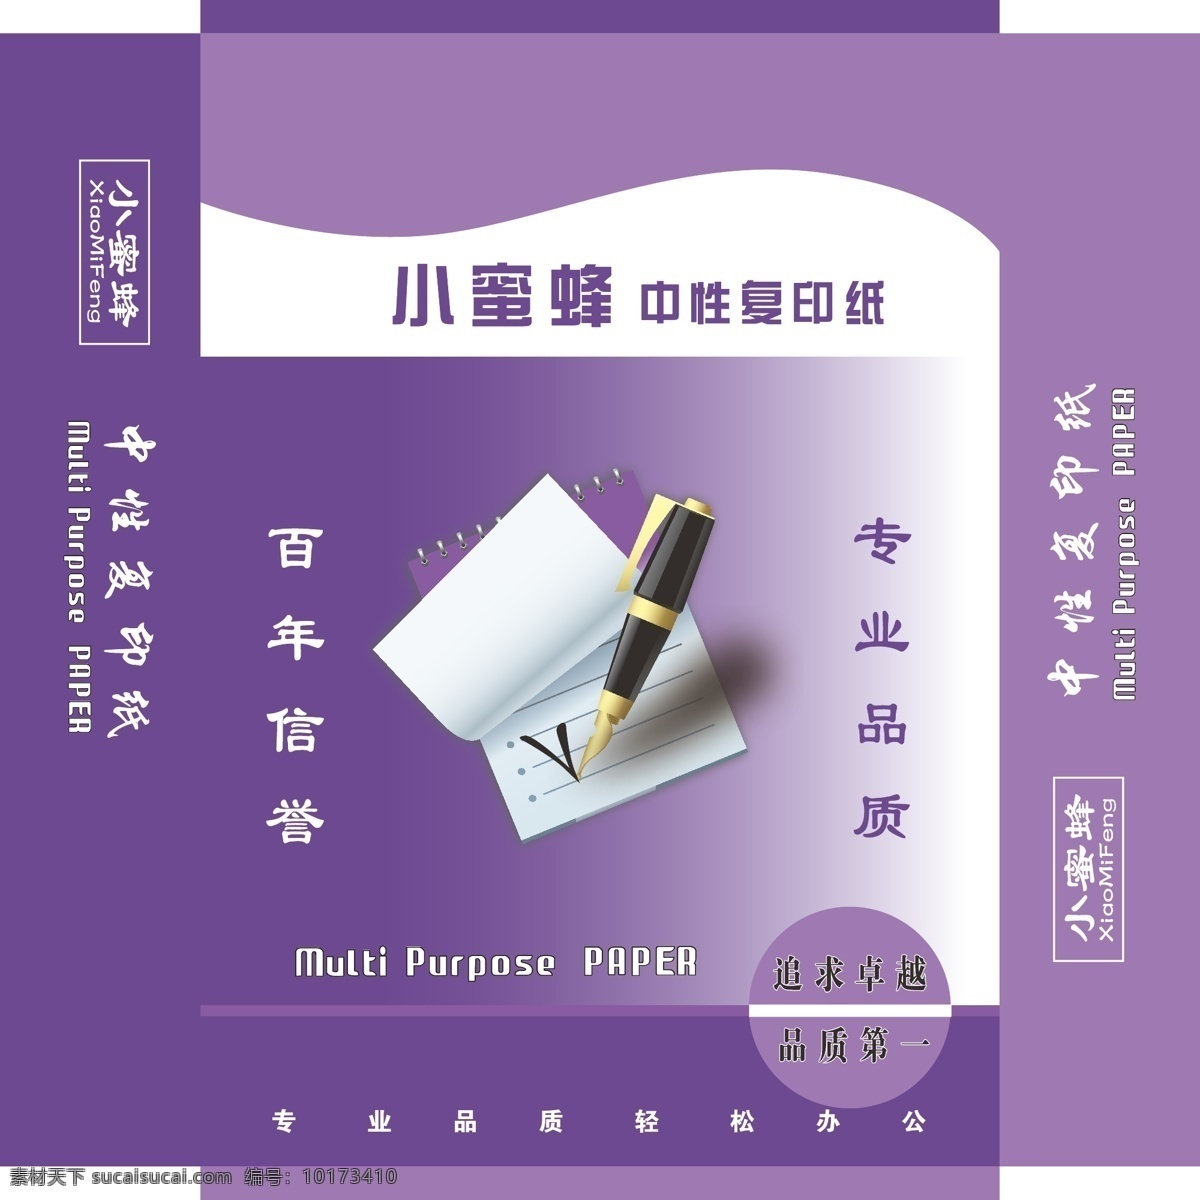 复印纸 内包装 纸 包装纸 设计图 复印纸设计图 包装设计 外包装 紫色大气 三华软包装 白色